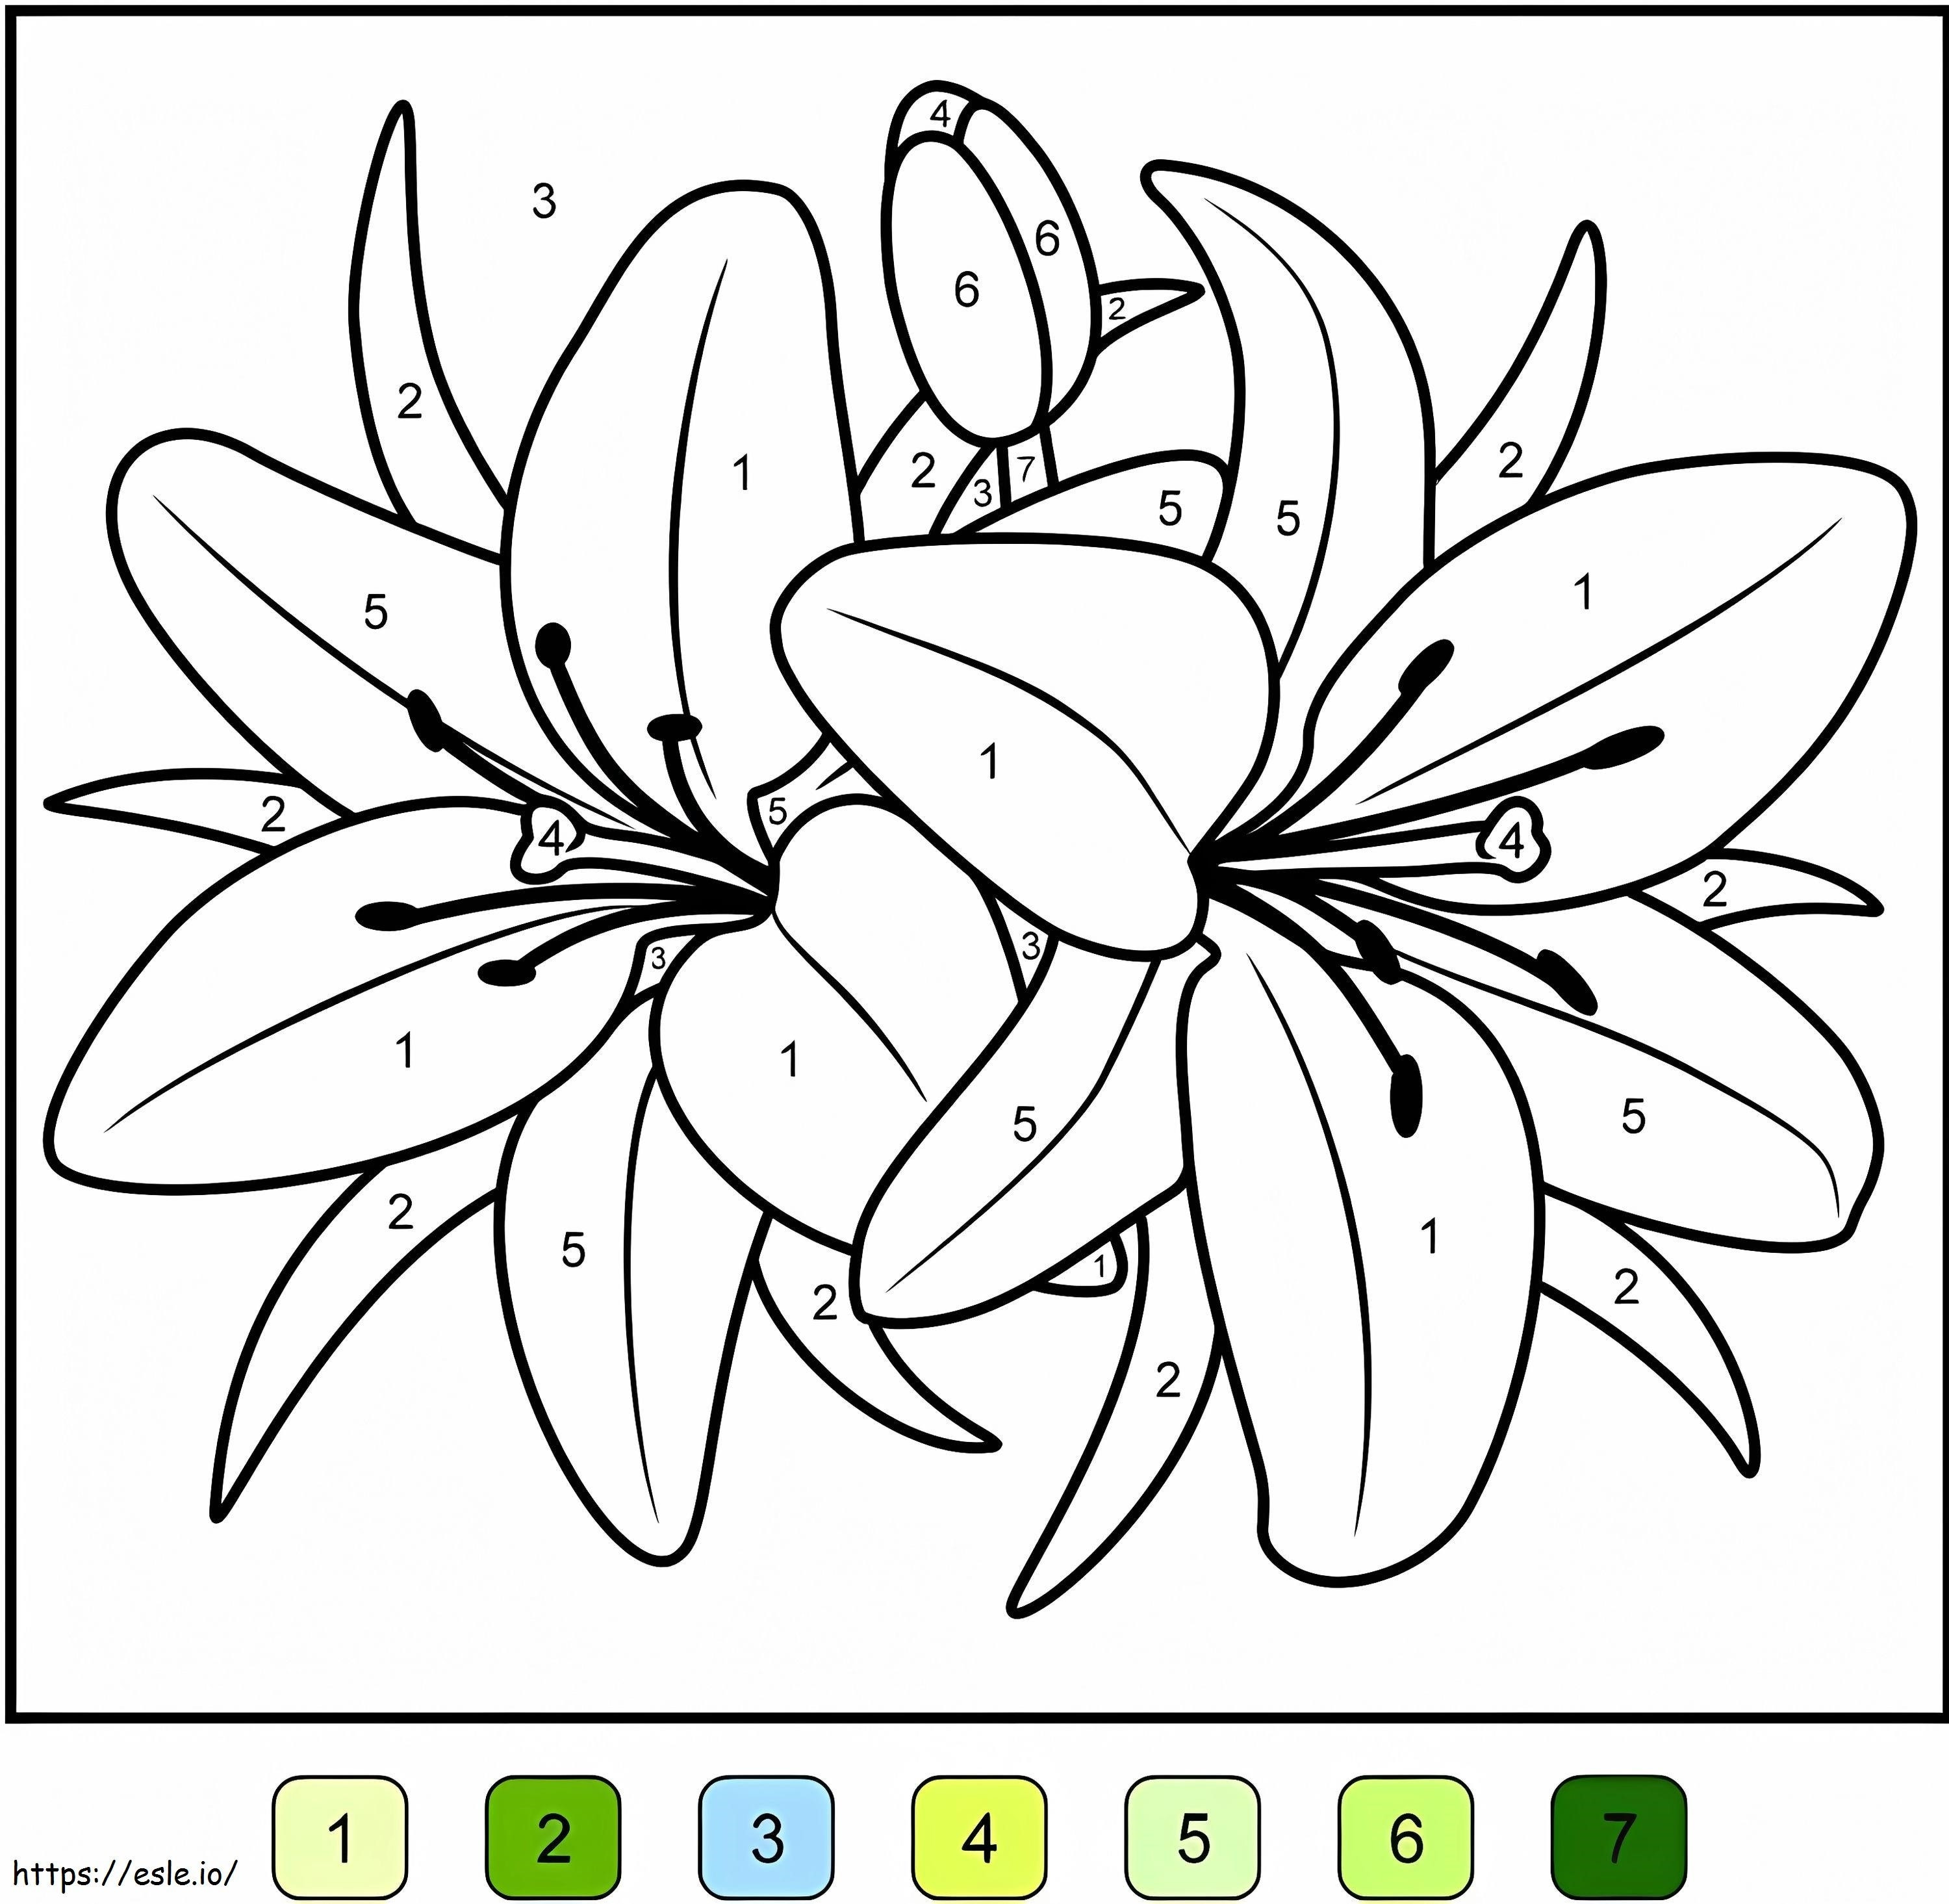 Culoare flori de crin după număr de colorat